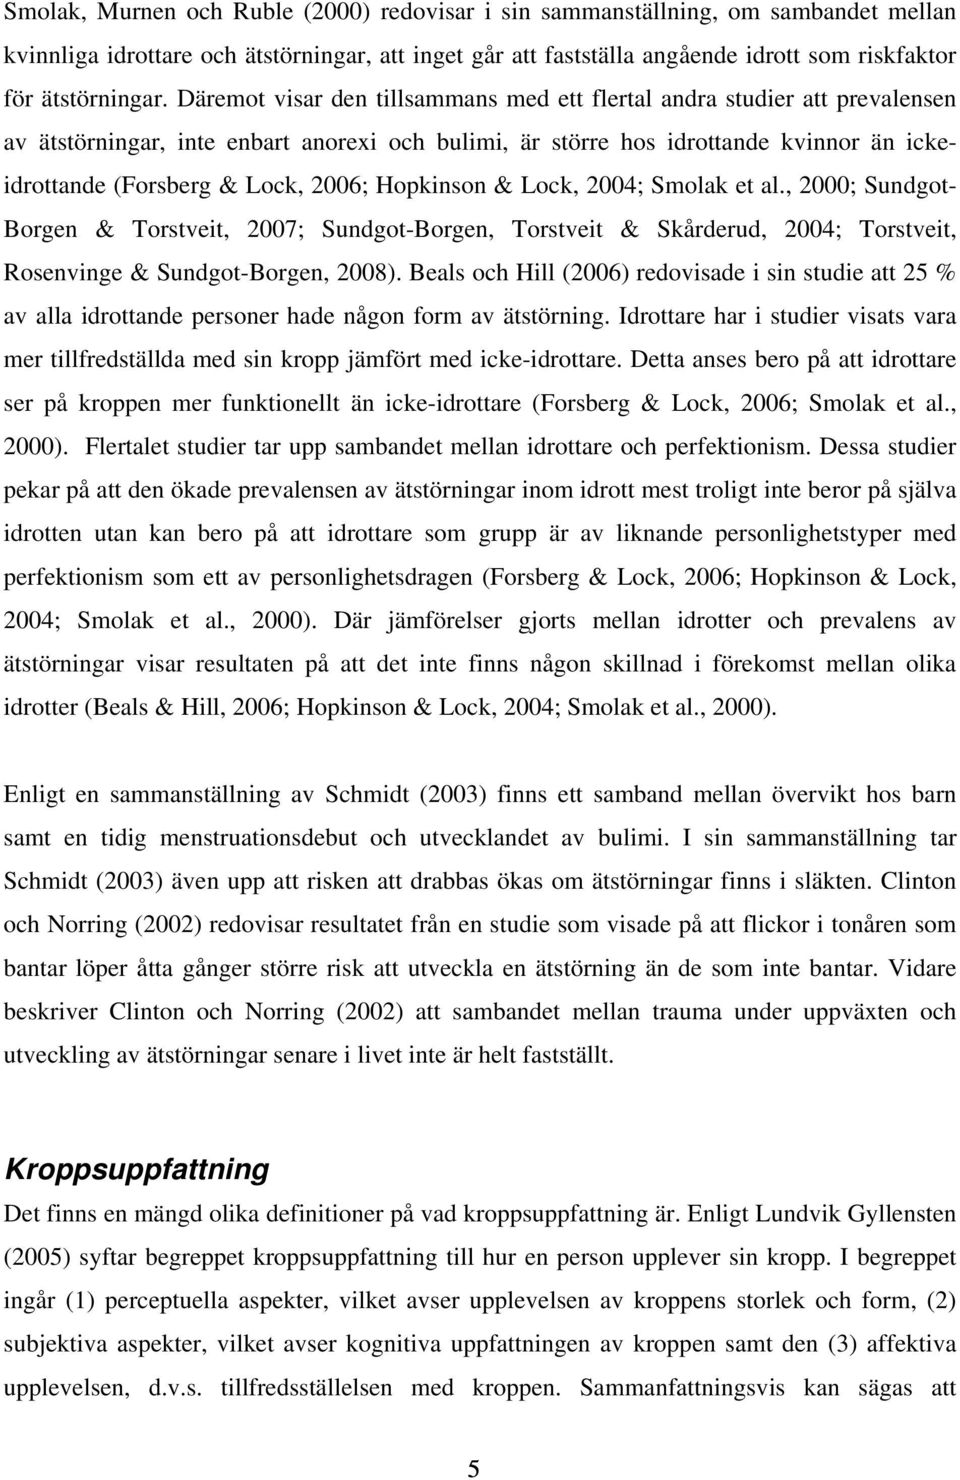 Hopkinson & Lock, 2004; Smolak et al., 2000; Sundgot- Borgen & Torstveit, 2007; Sundgot-Borgen, Torstveit & Skårderud, 2004; Torstveit, Rosenvinge & Sundgot-Borgen, 2008).